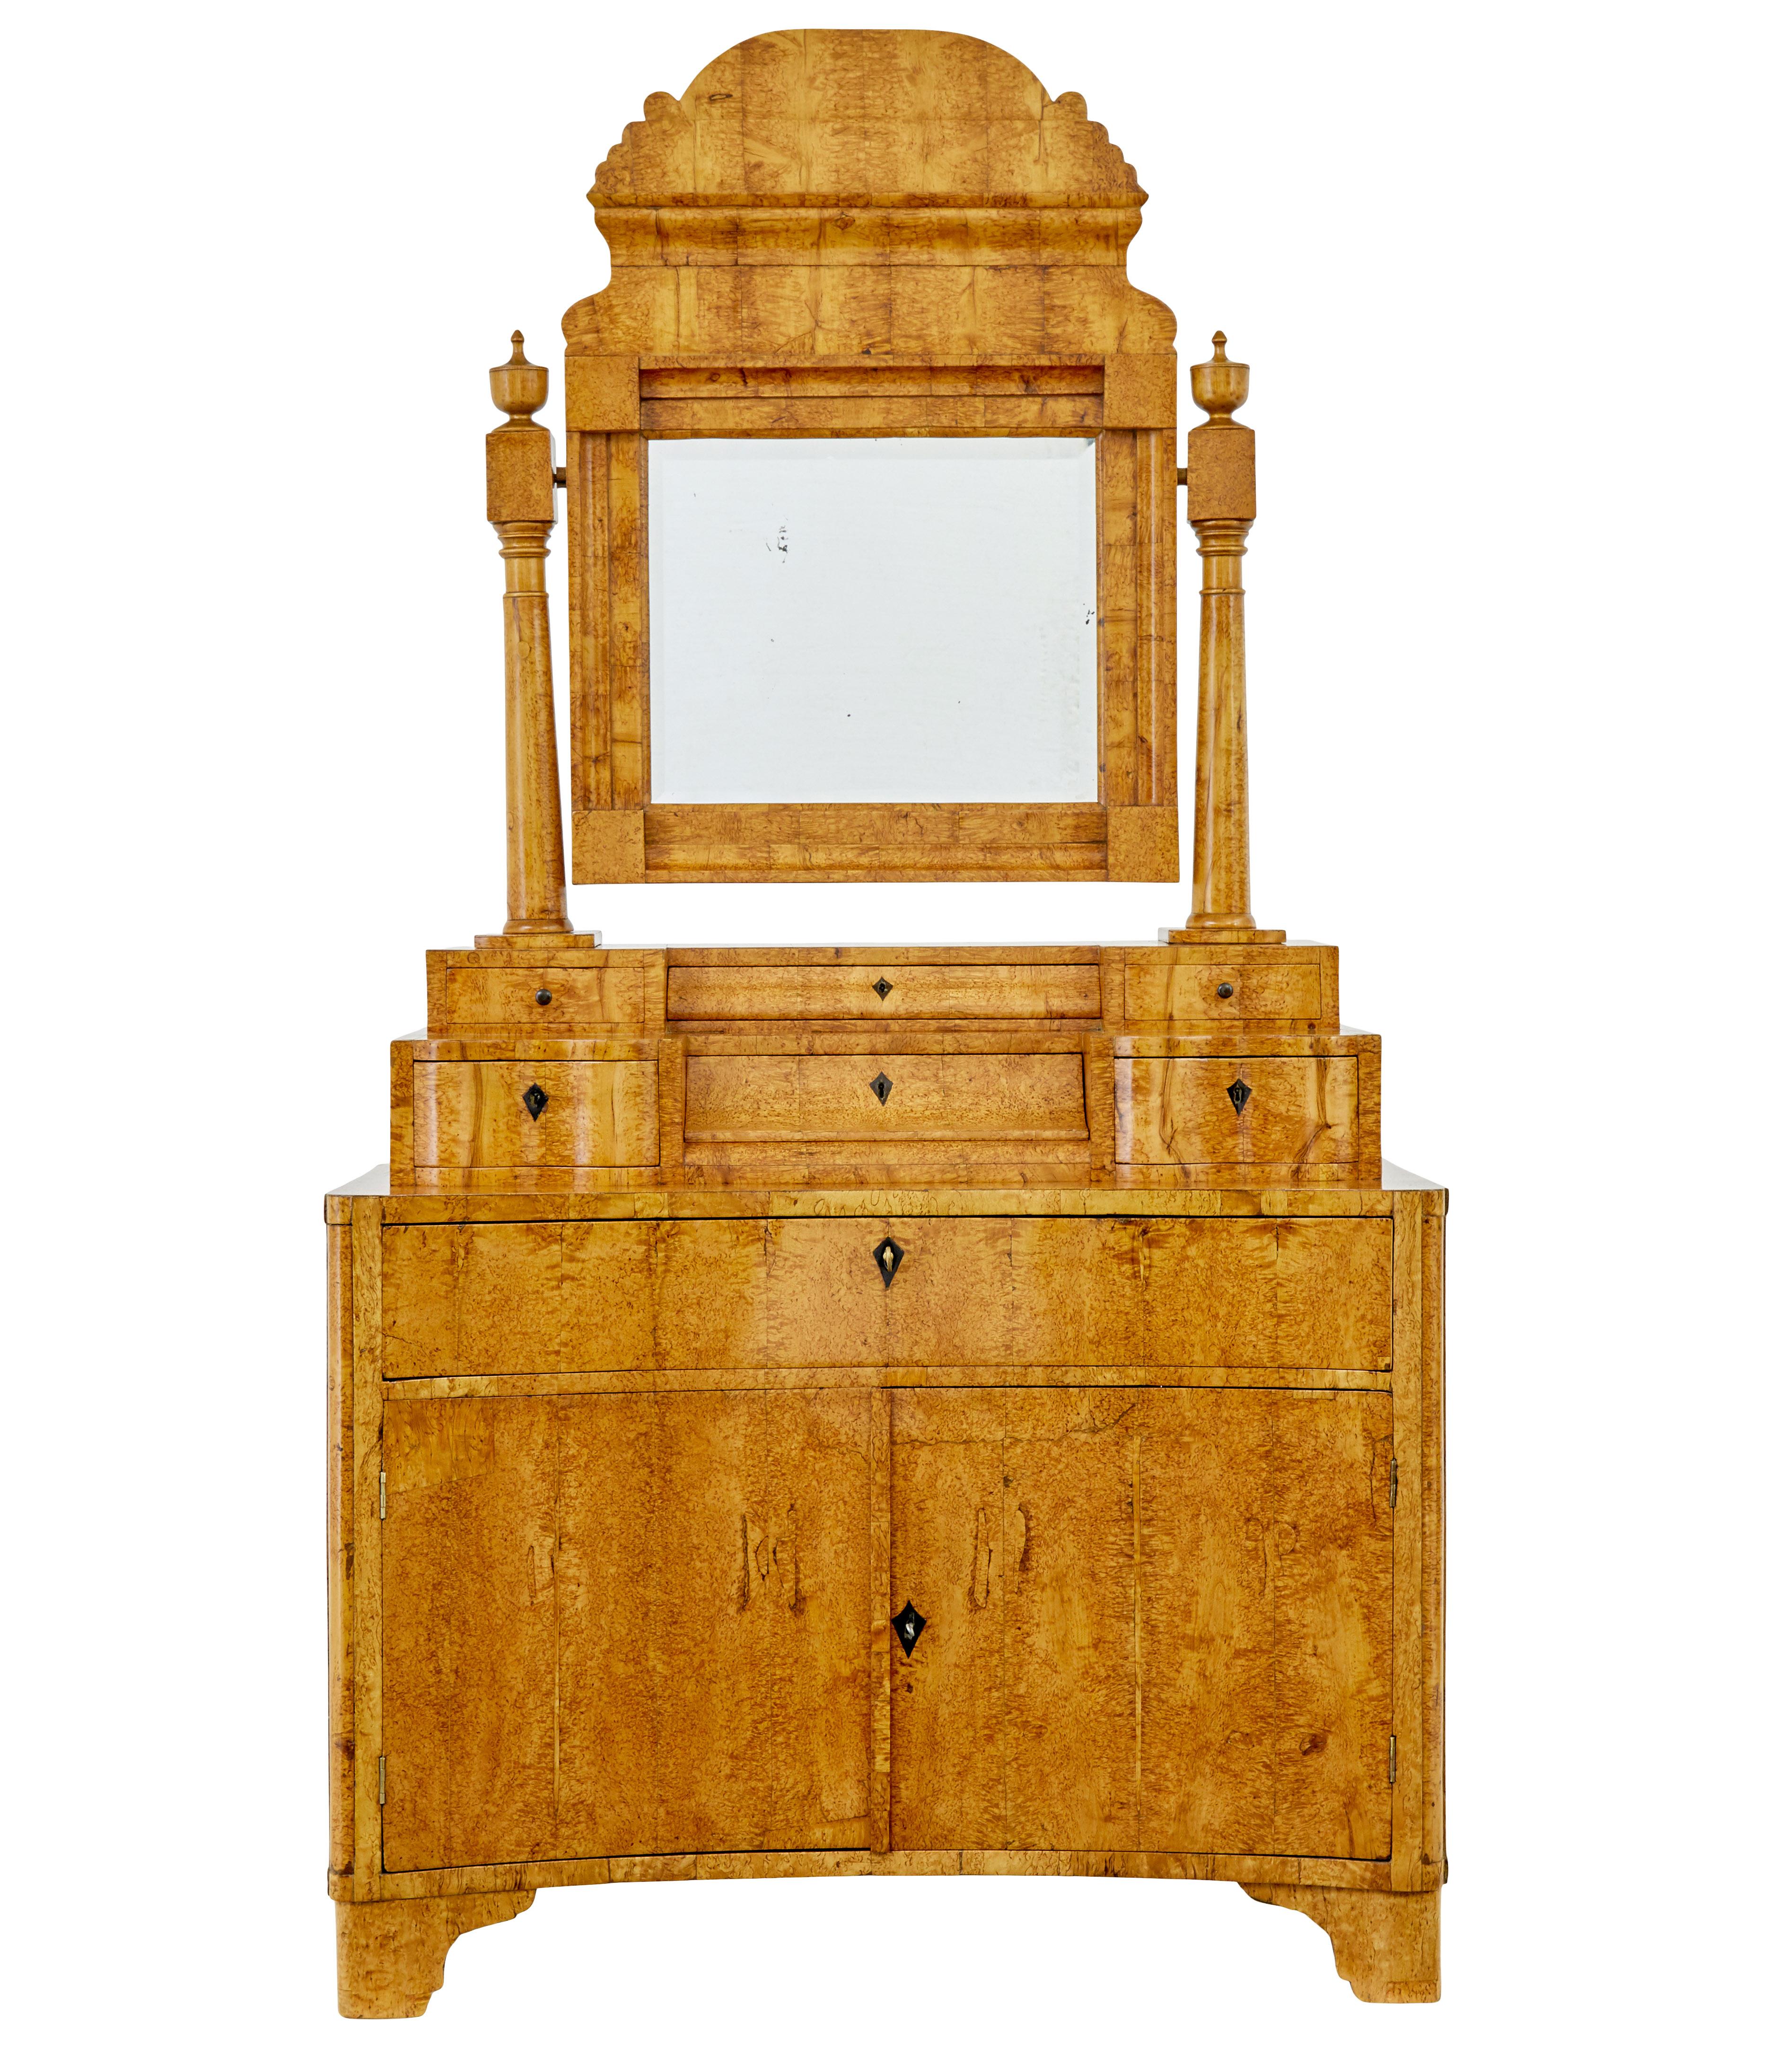 Biedermeier-Schminktisch aus Birke, frühes 19. Jahrhundert, um 1830.

Wunderschönes Biedermeier-Möbelstück aus karelischer Birke.

Besteht aus zwei Hauptteilen, wobei der Spiegel und die Stützen ebenfalls abnehmbar sind.

Dekorativer Kippspiegel,